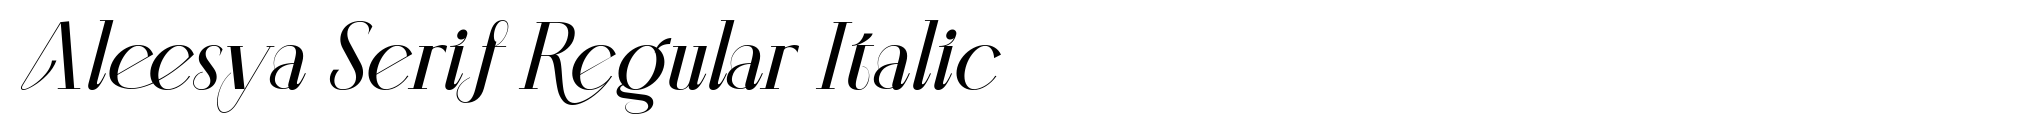 Aleesya Serif Regular Italic image